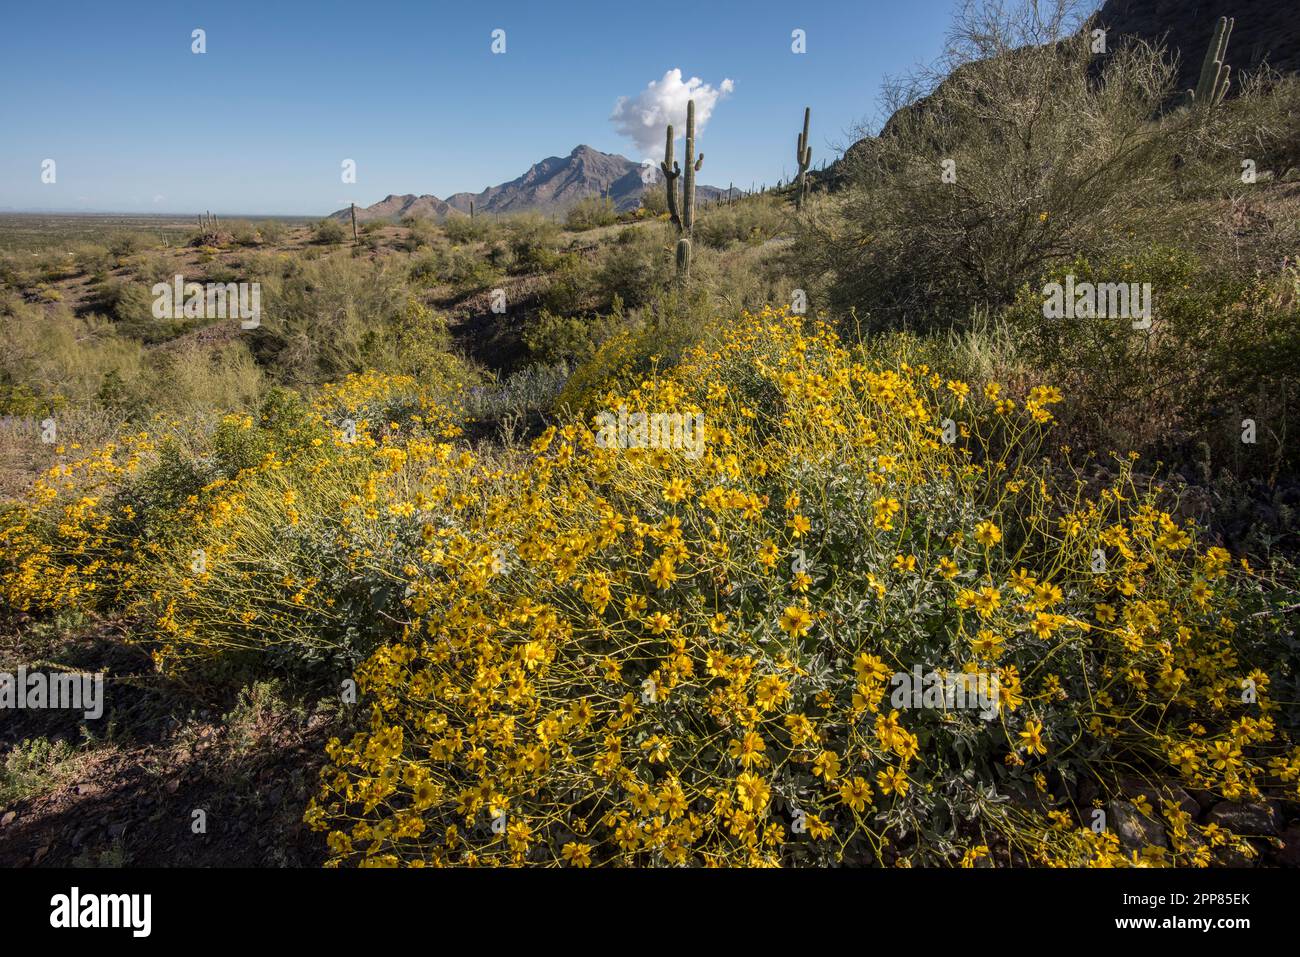 Paysage pittoresque avec fleurs sauvages en pleine floraison dans le désert de Sonoran au parc national de Picacho Peak, Picacho, Arizona, États-Unis Banque D'Images